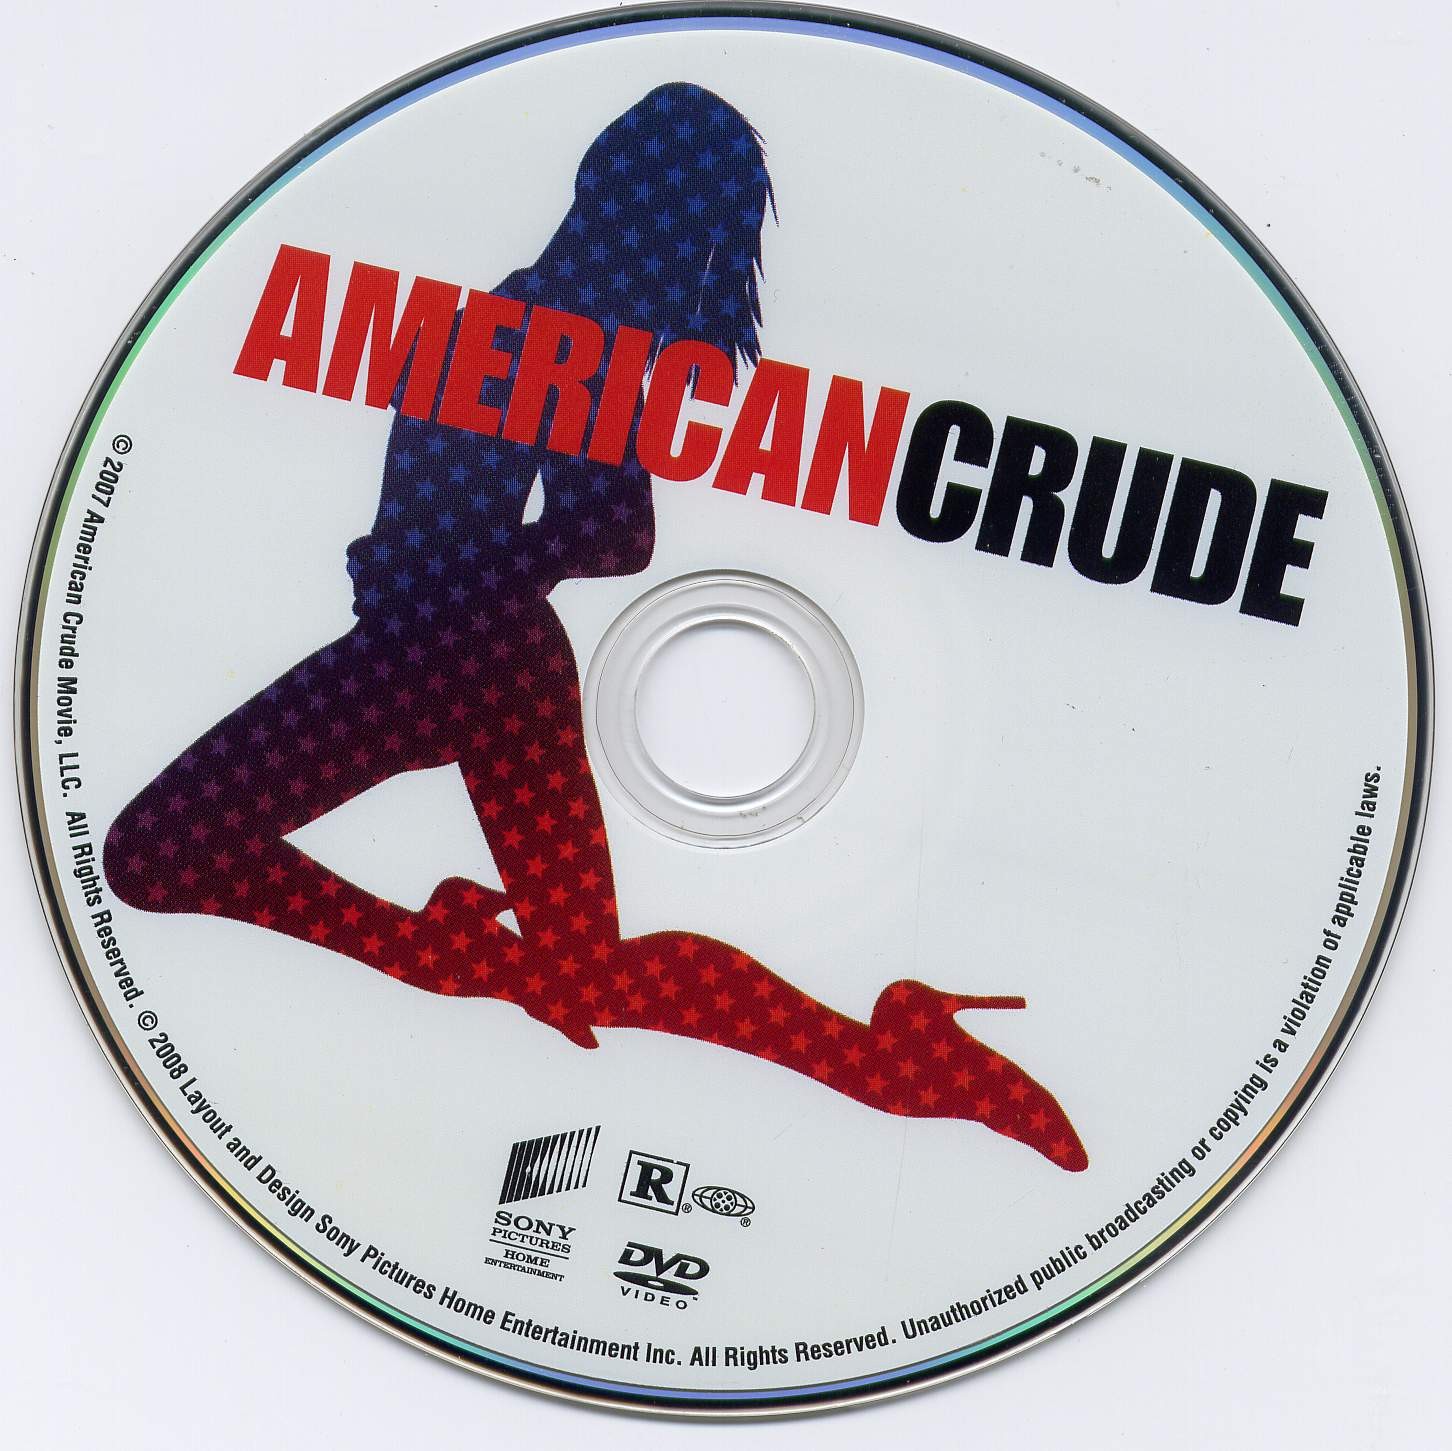 American crude